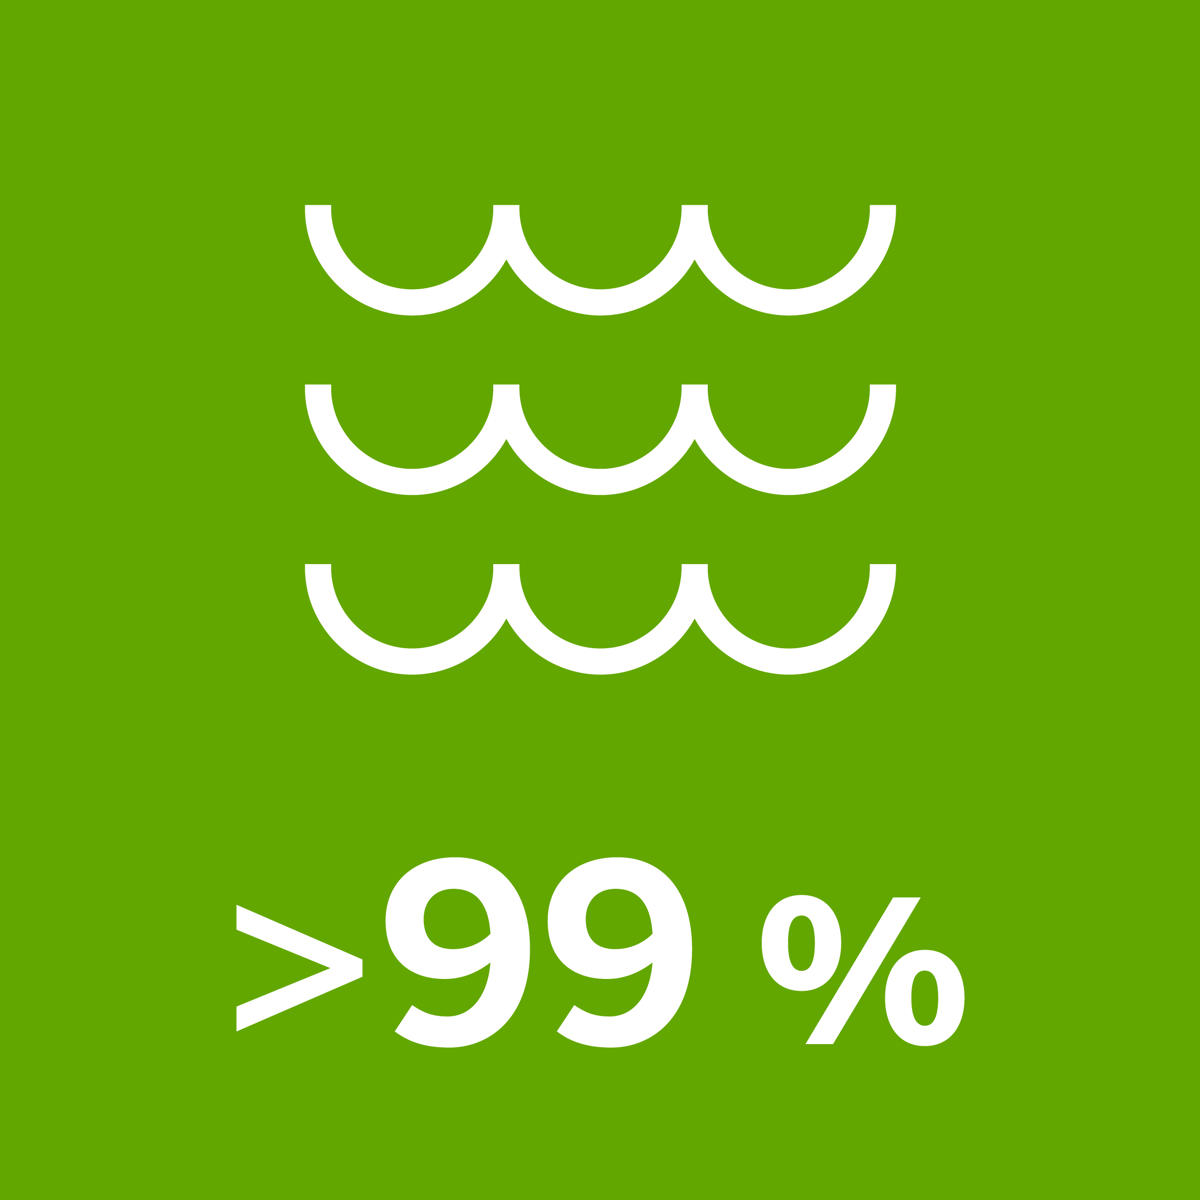 Mehr als 99 % des von uns verwendeten Wassers ist Oberflächenwasser aus Seen und Flüssen.